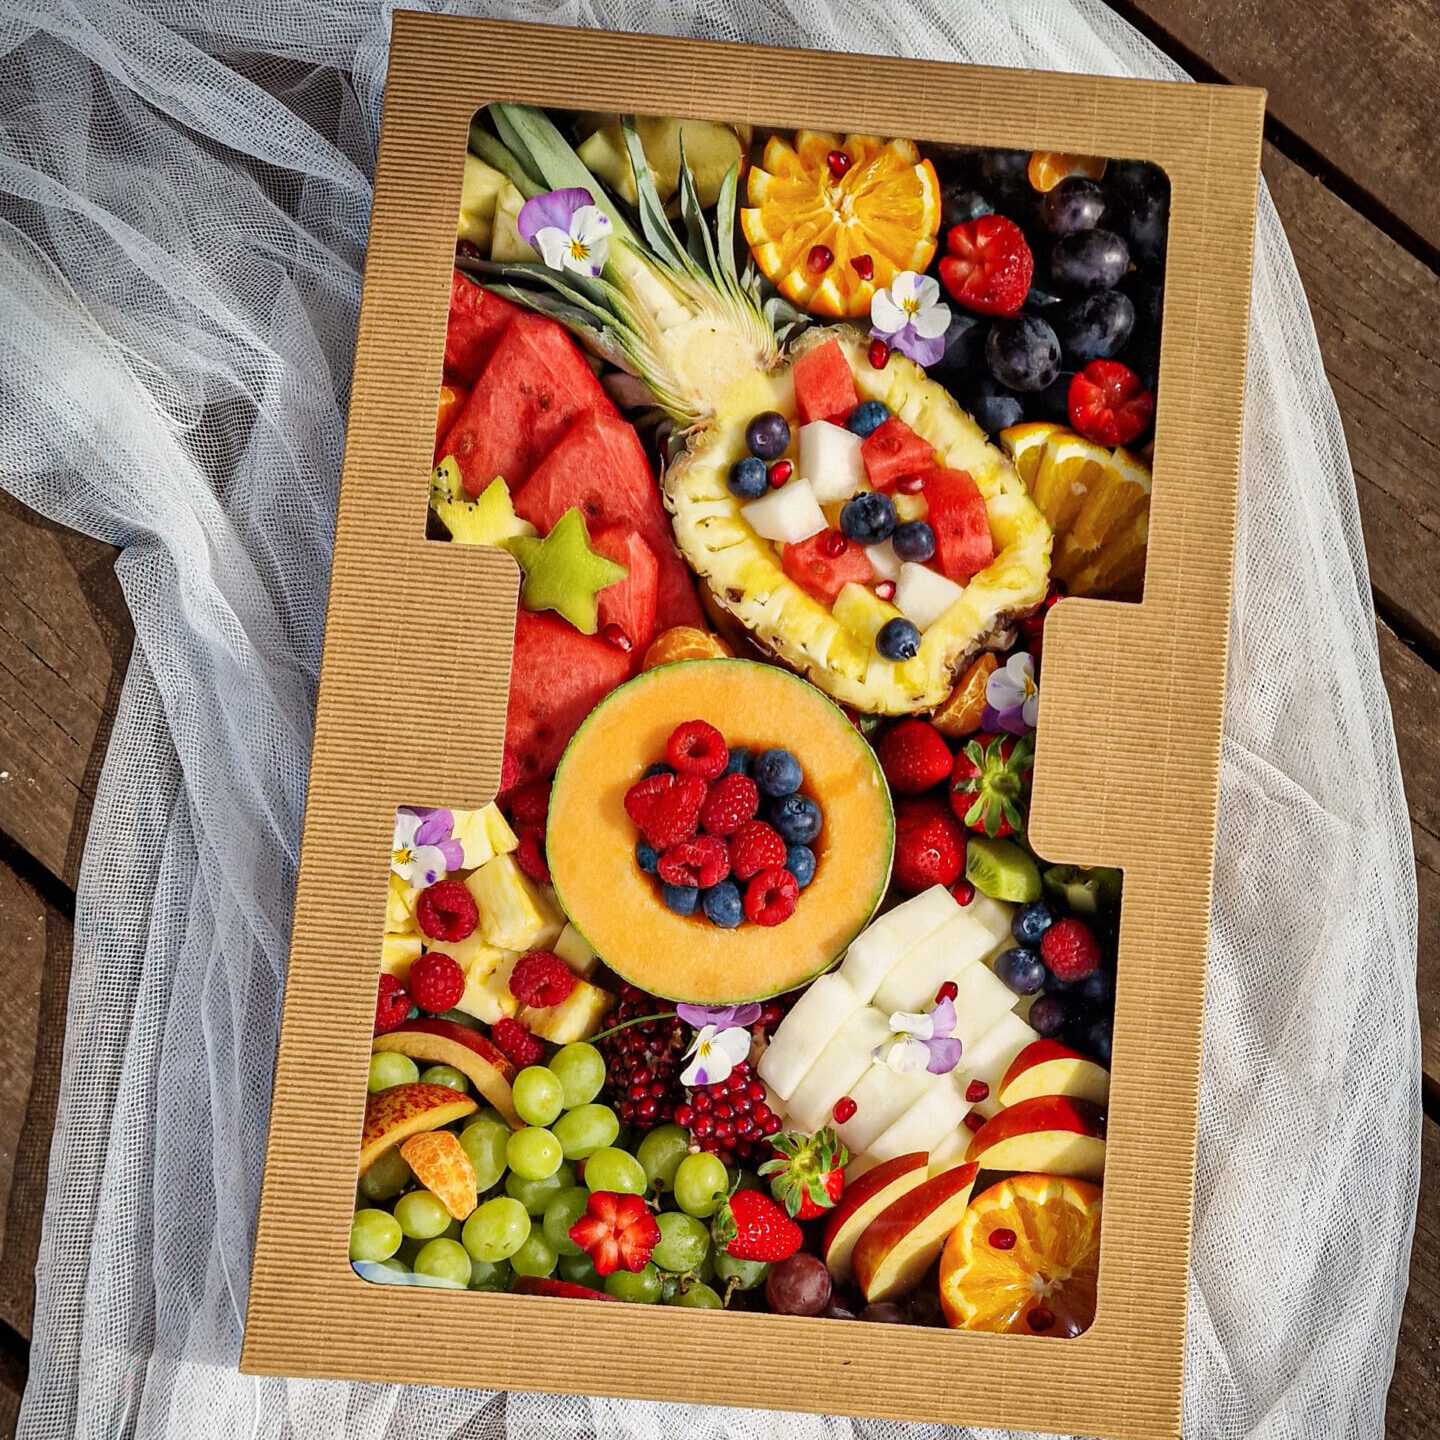 Soczyste kawałki świeżych owoców, zarówno tropikalnych jak i tych sezonowych. Prawdziwa eksplozja smaków i kolorów zamknięta w ogromnym, ale jakże uroczym pudełku.